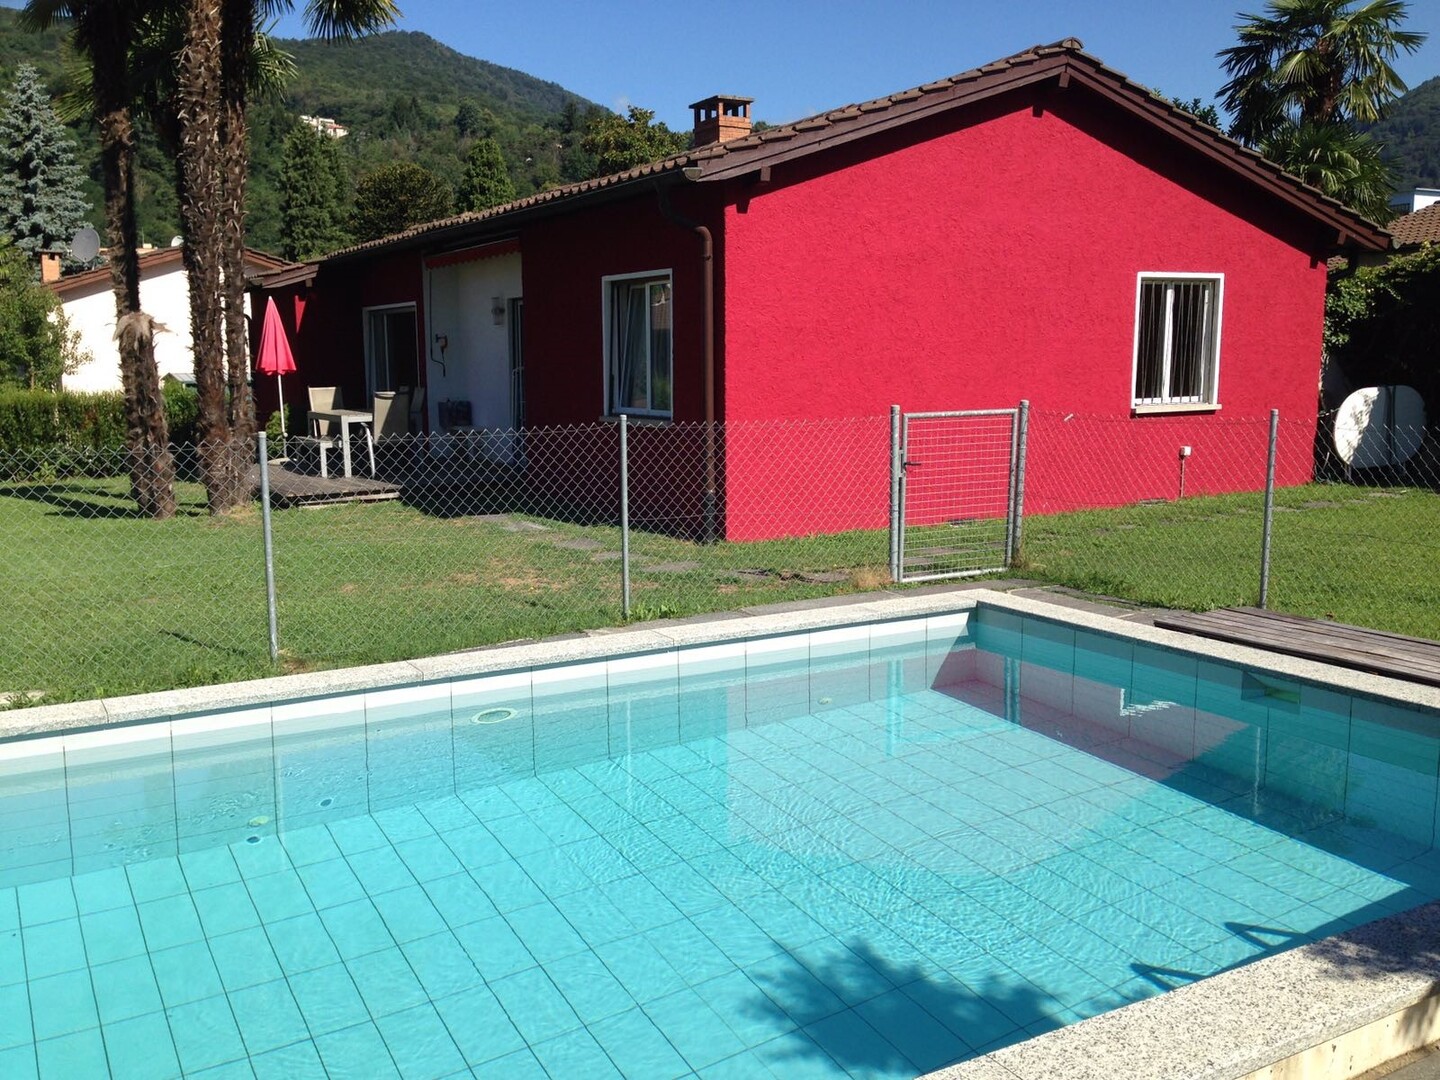 3,5 locali, casa di vacanza 'Casa Beata', Via Industria 30, Caslano, Lago di Lugano